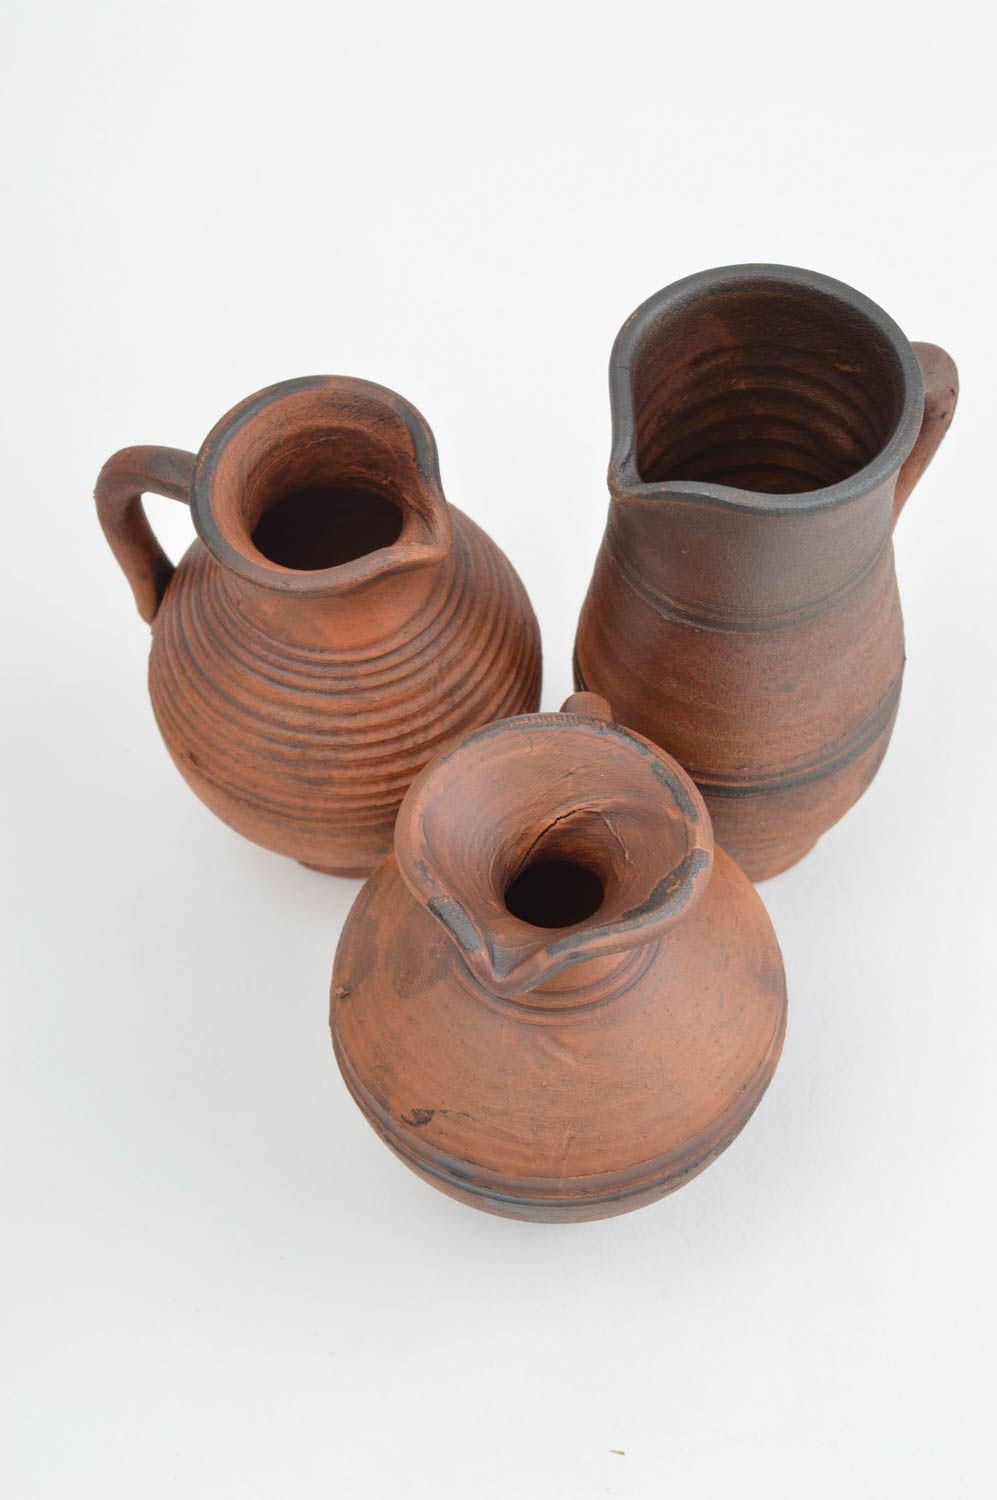 Jarras de cerámica artesanales accesorios de cocina regalo original para amigos foto 3